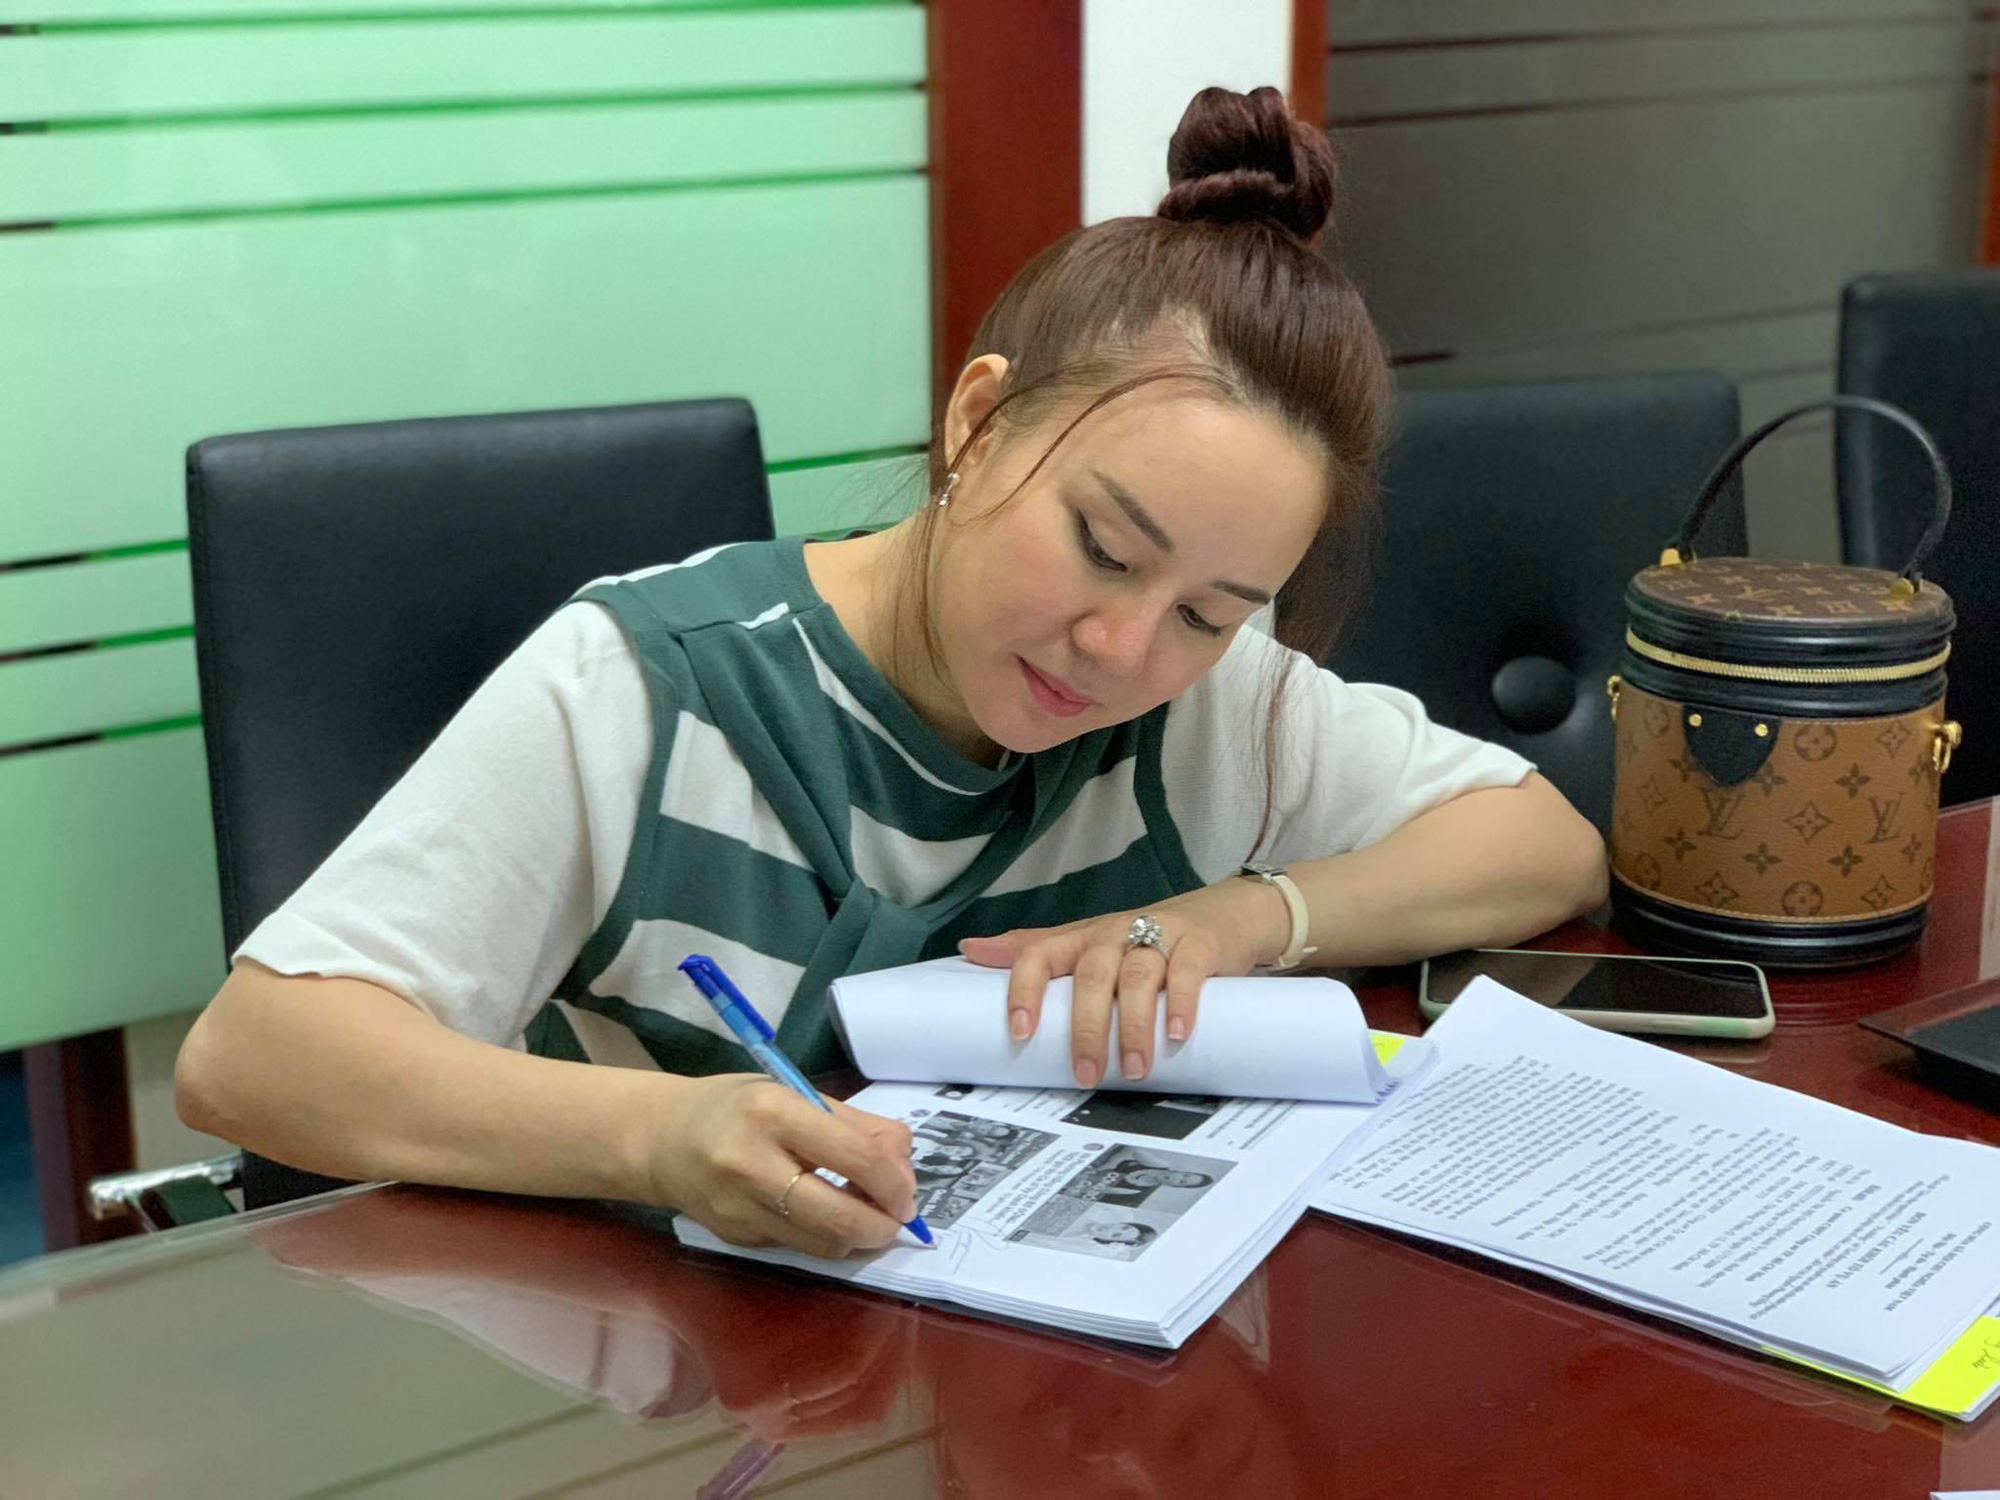 Ca sĩ Vy Oanh yêu cầu khởi tố vụ án, khởi tố bị can đối với CEO Nguyễn Phương Hằng   - Ảnh 1.